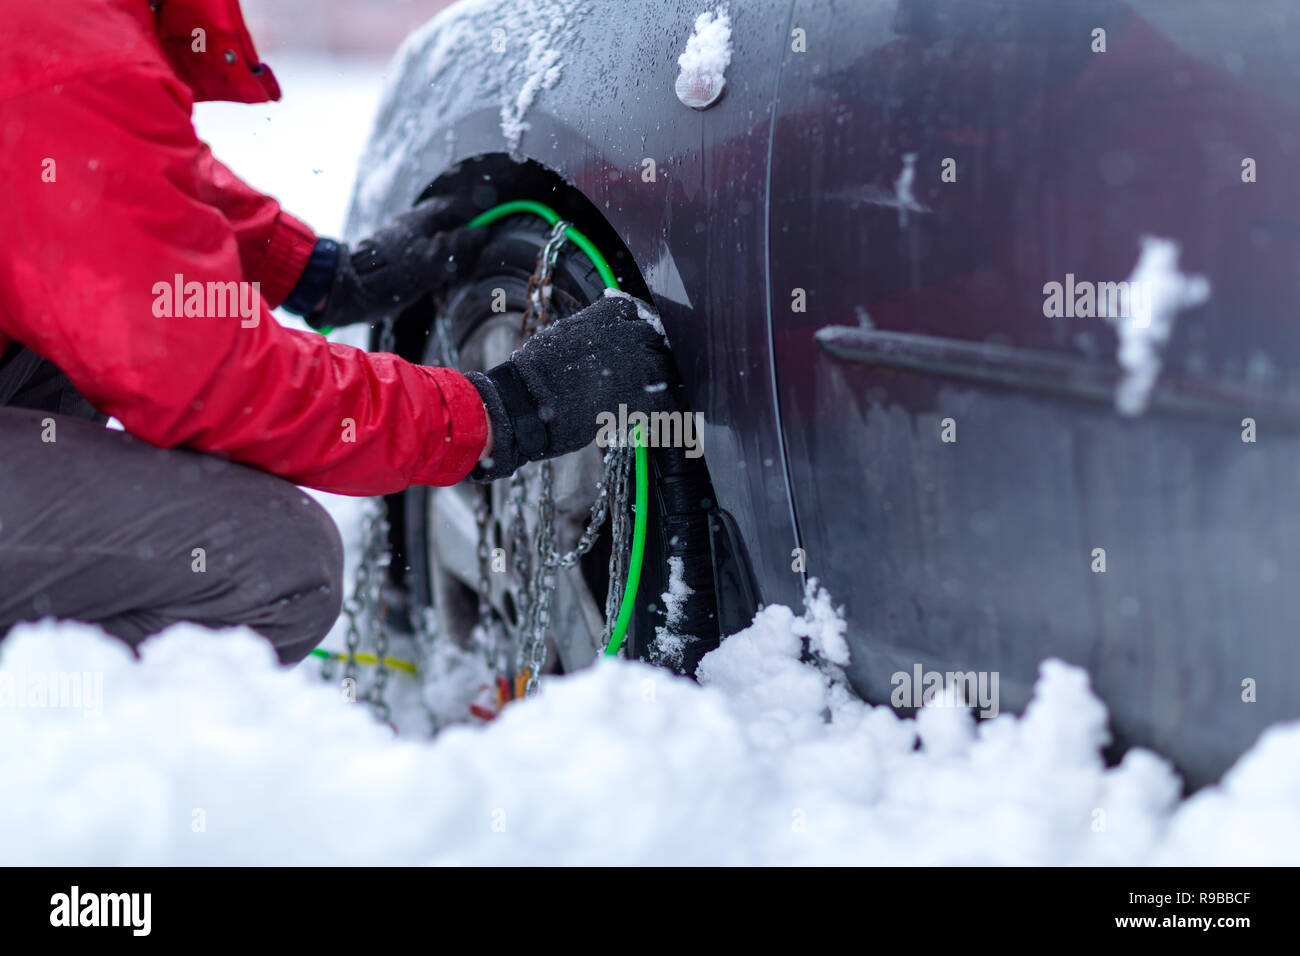 Cadenas para nieve en las ruedas del coche. joven intenta poner cadenas para la nieve en las llantas agarrando las cadenas para la nieve. Foto de stock